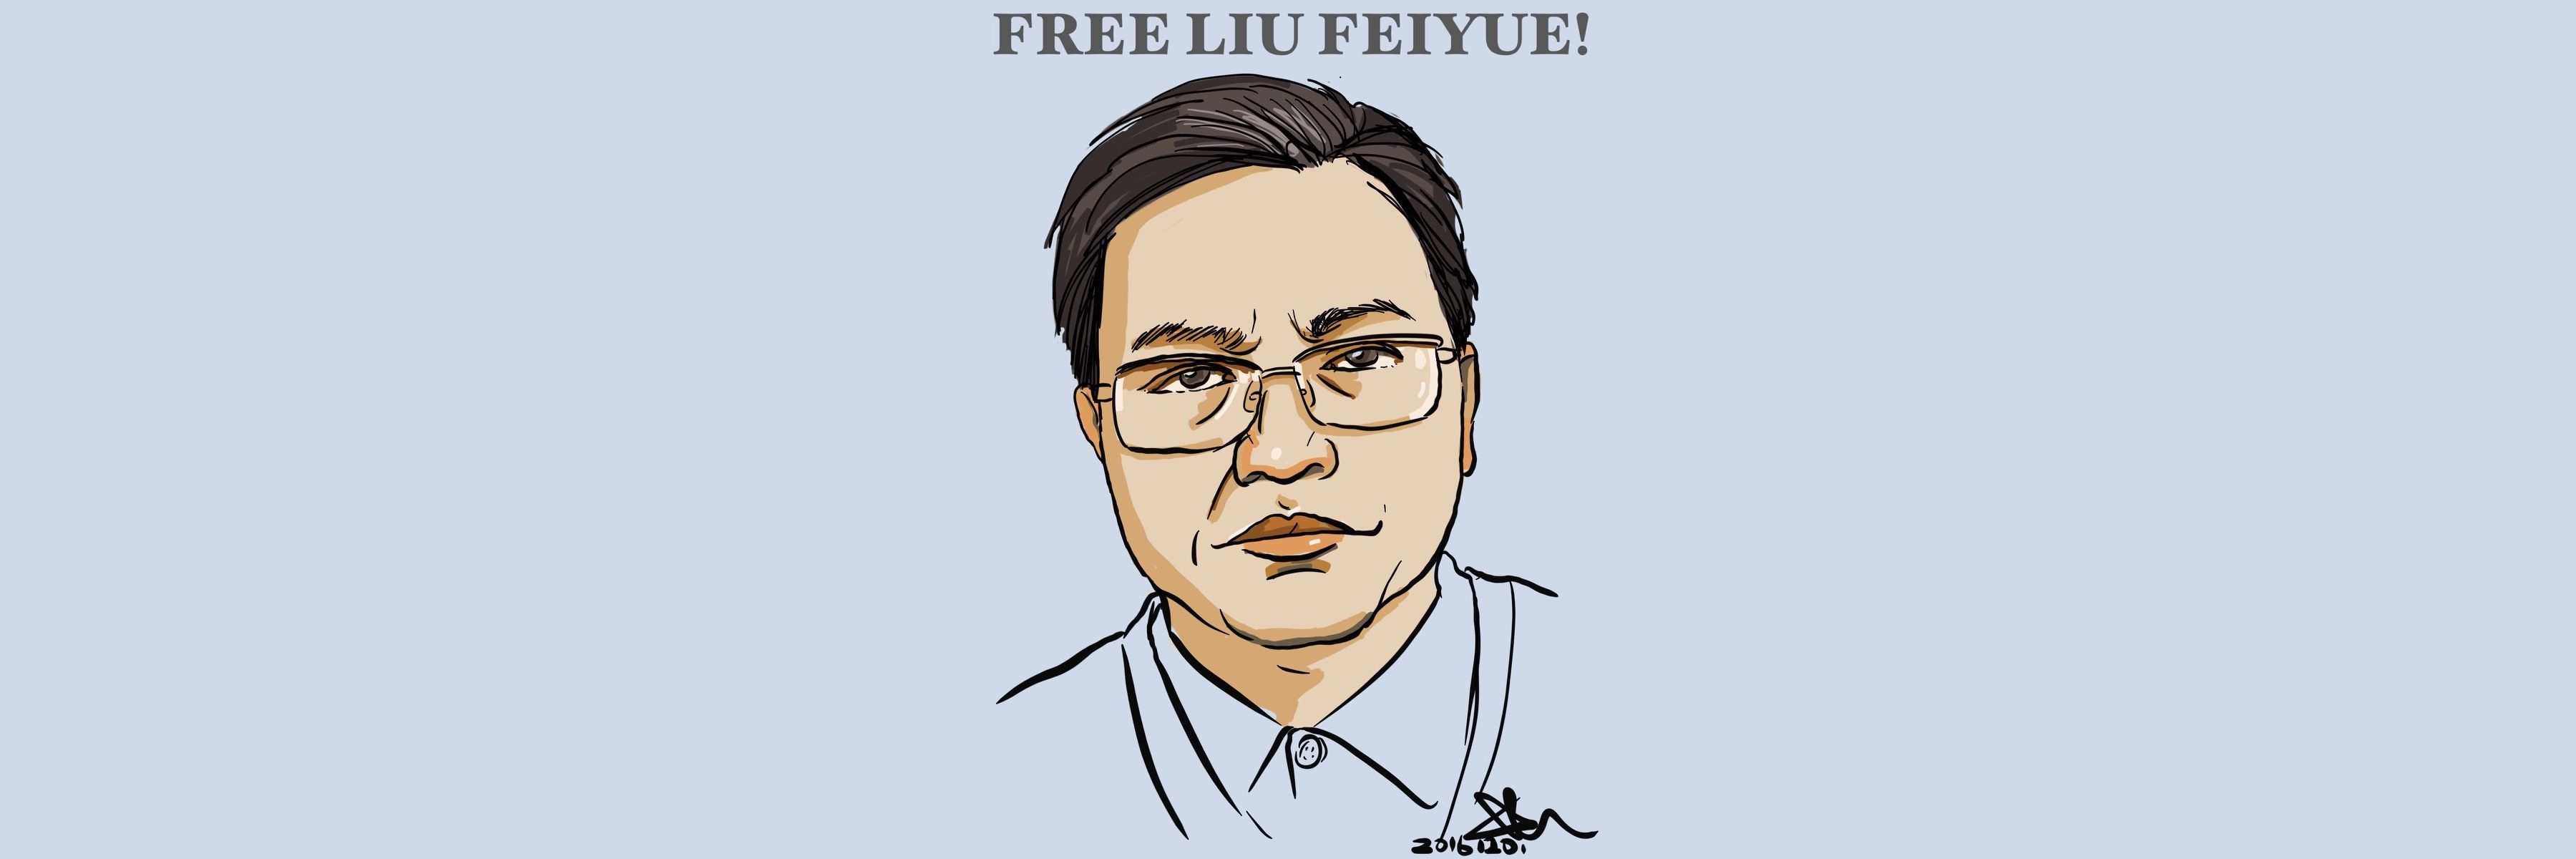 刘飞跃 中國 拘禁 表達自由